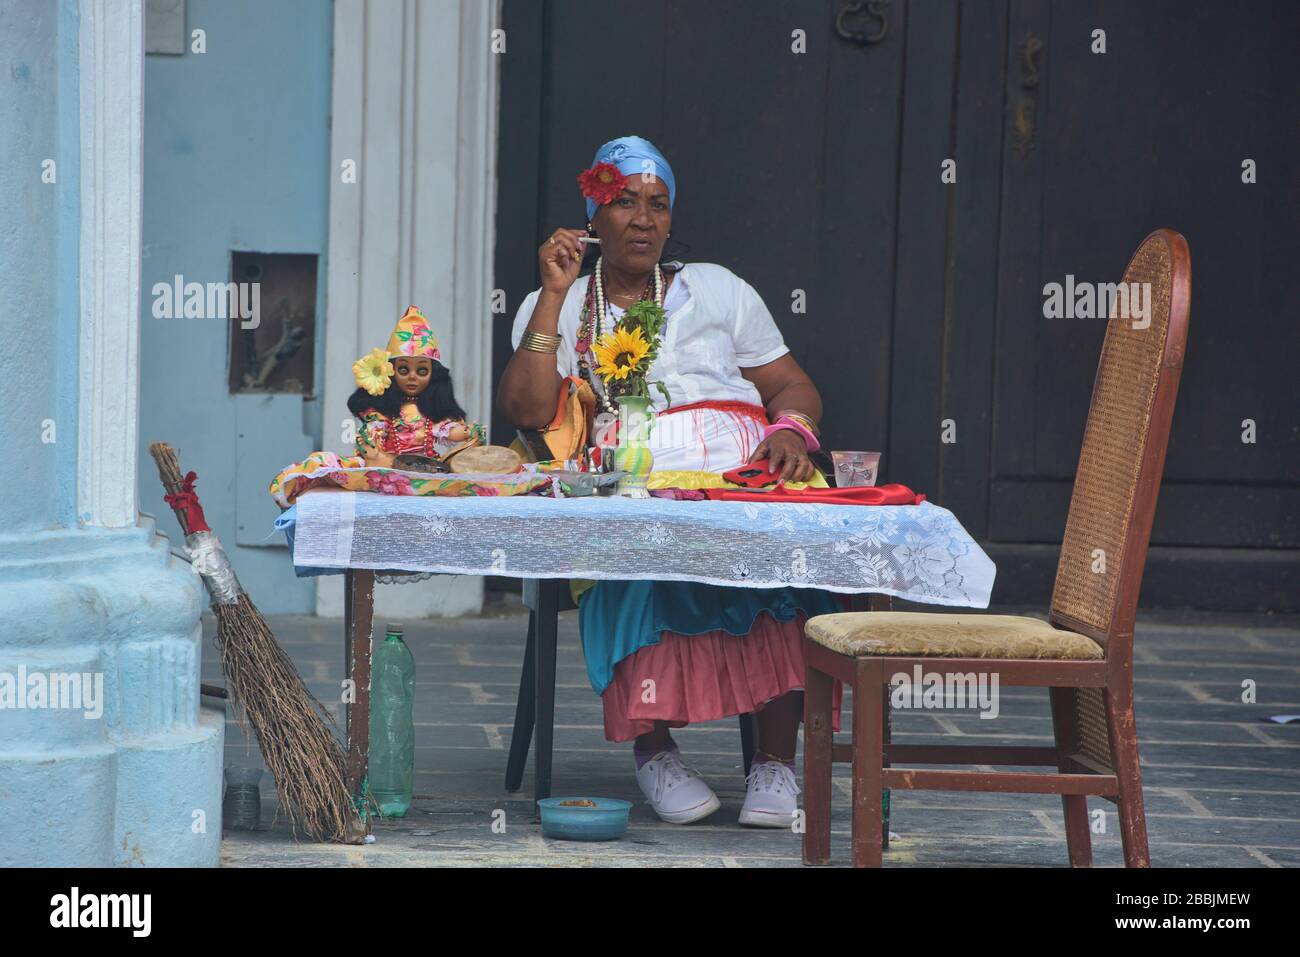 Traditioneller Wahrsager in Havanna Vieja, Havanna, Kuba Stockfoto